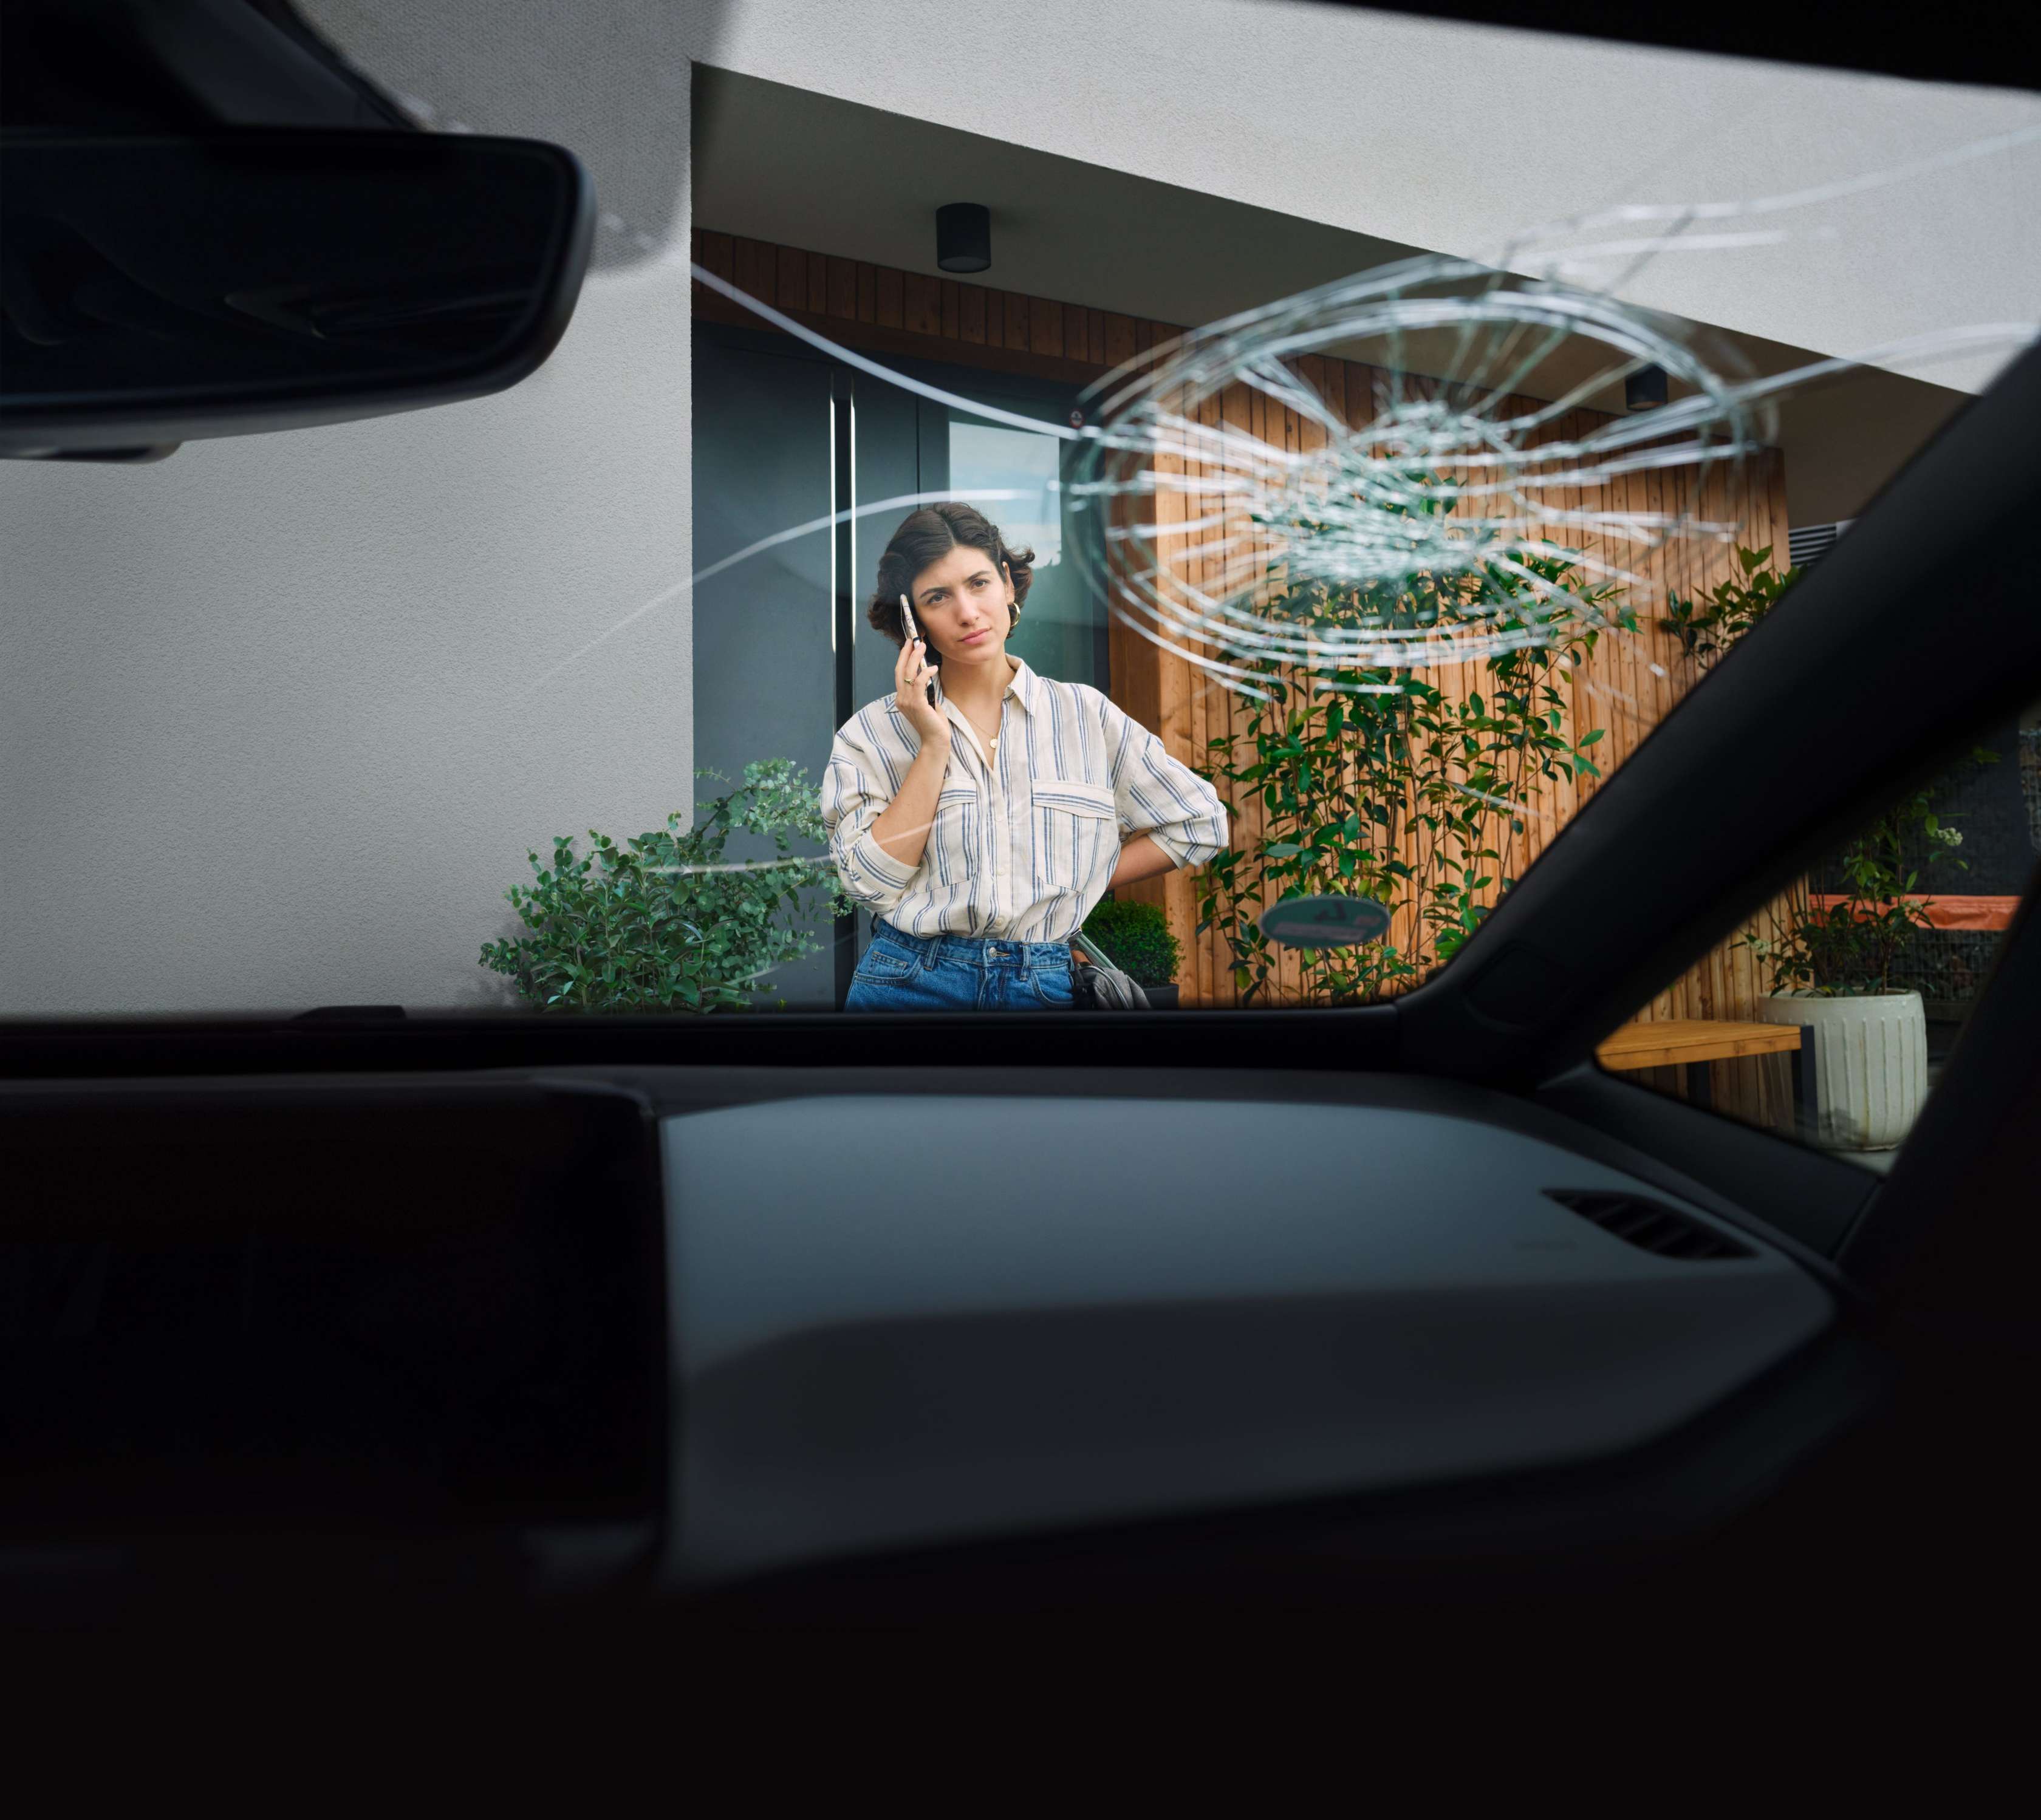 Kfz-Versicherung: Frau steht telefonierend vor Auto mit gesprungener Windschutzscheibe.